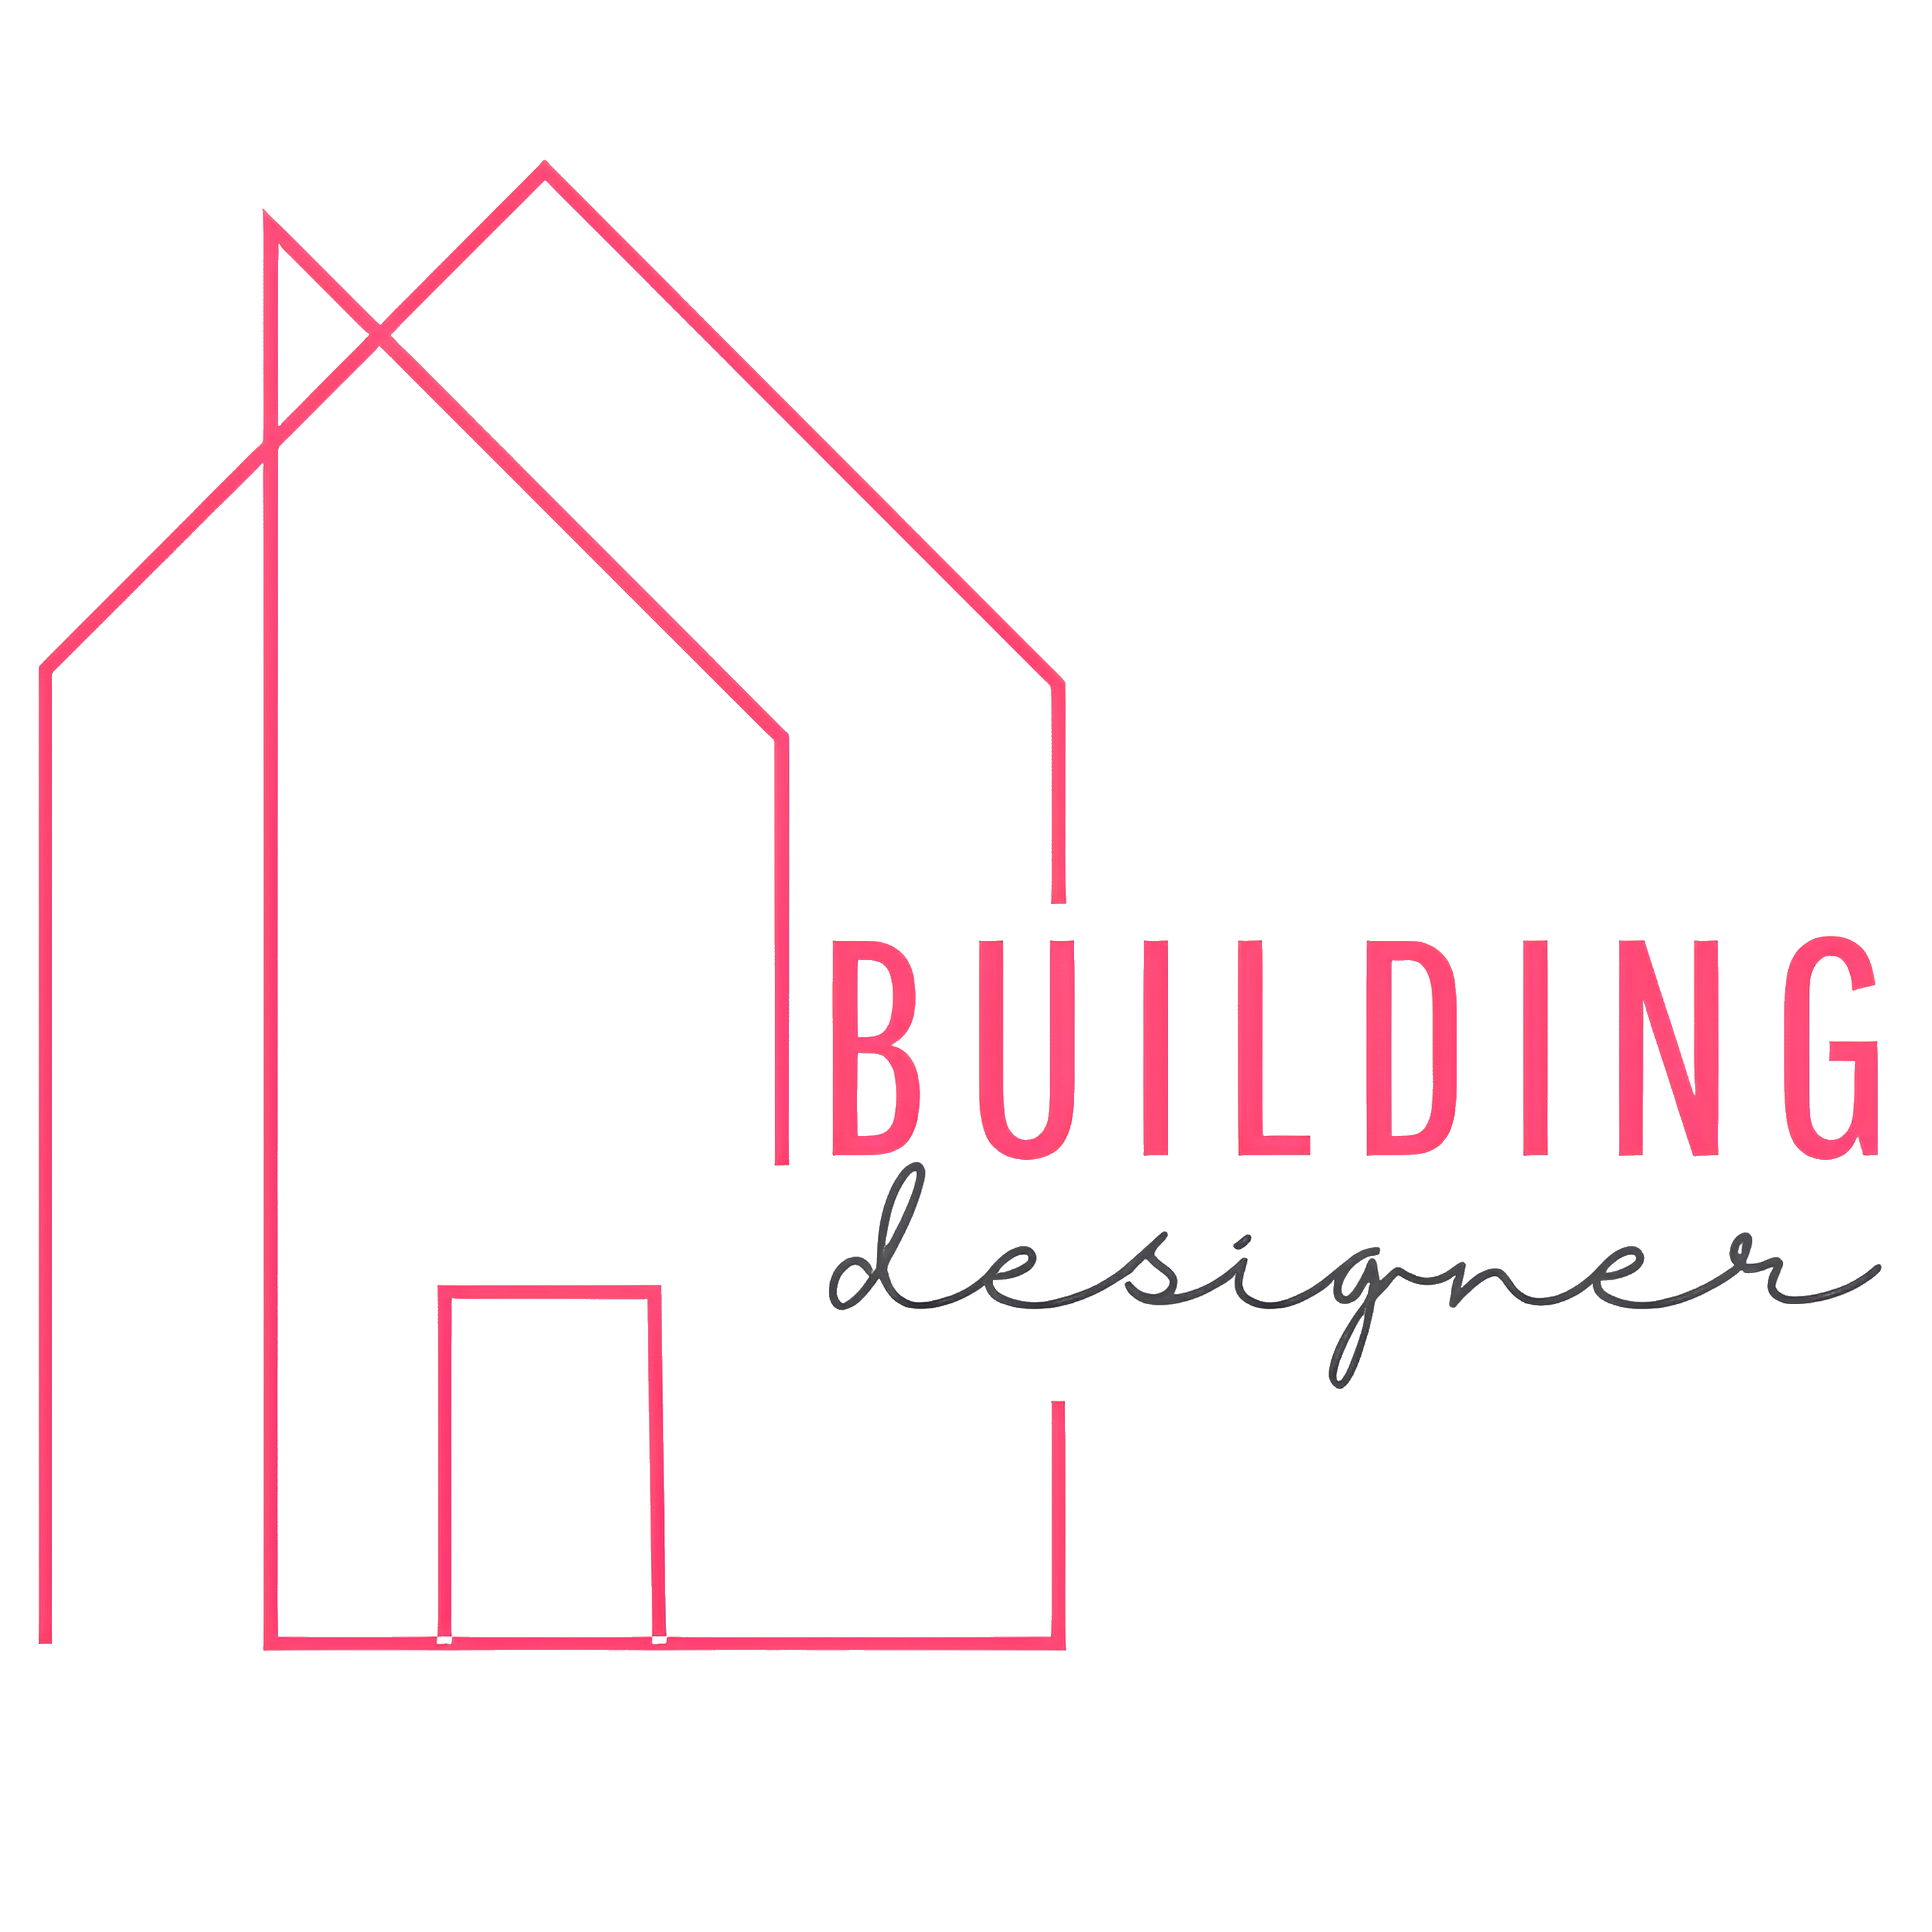 Building Designers